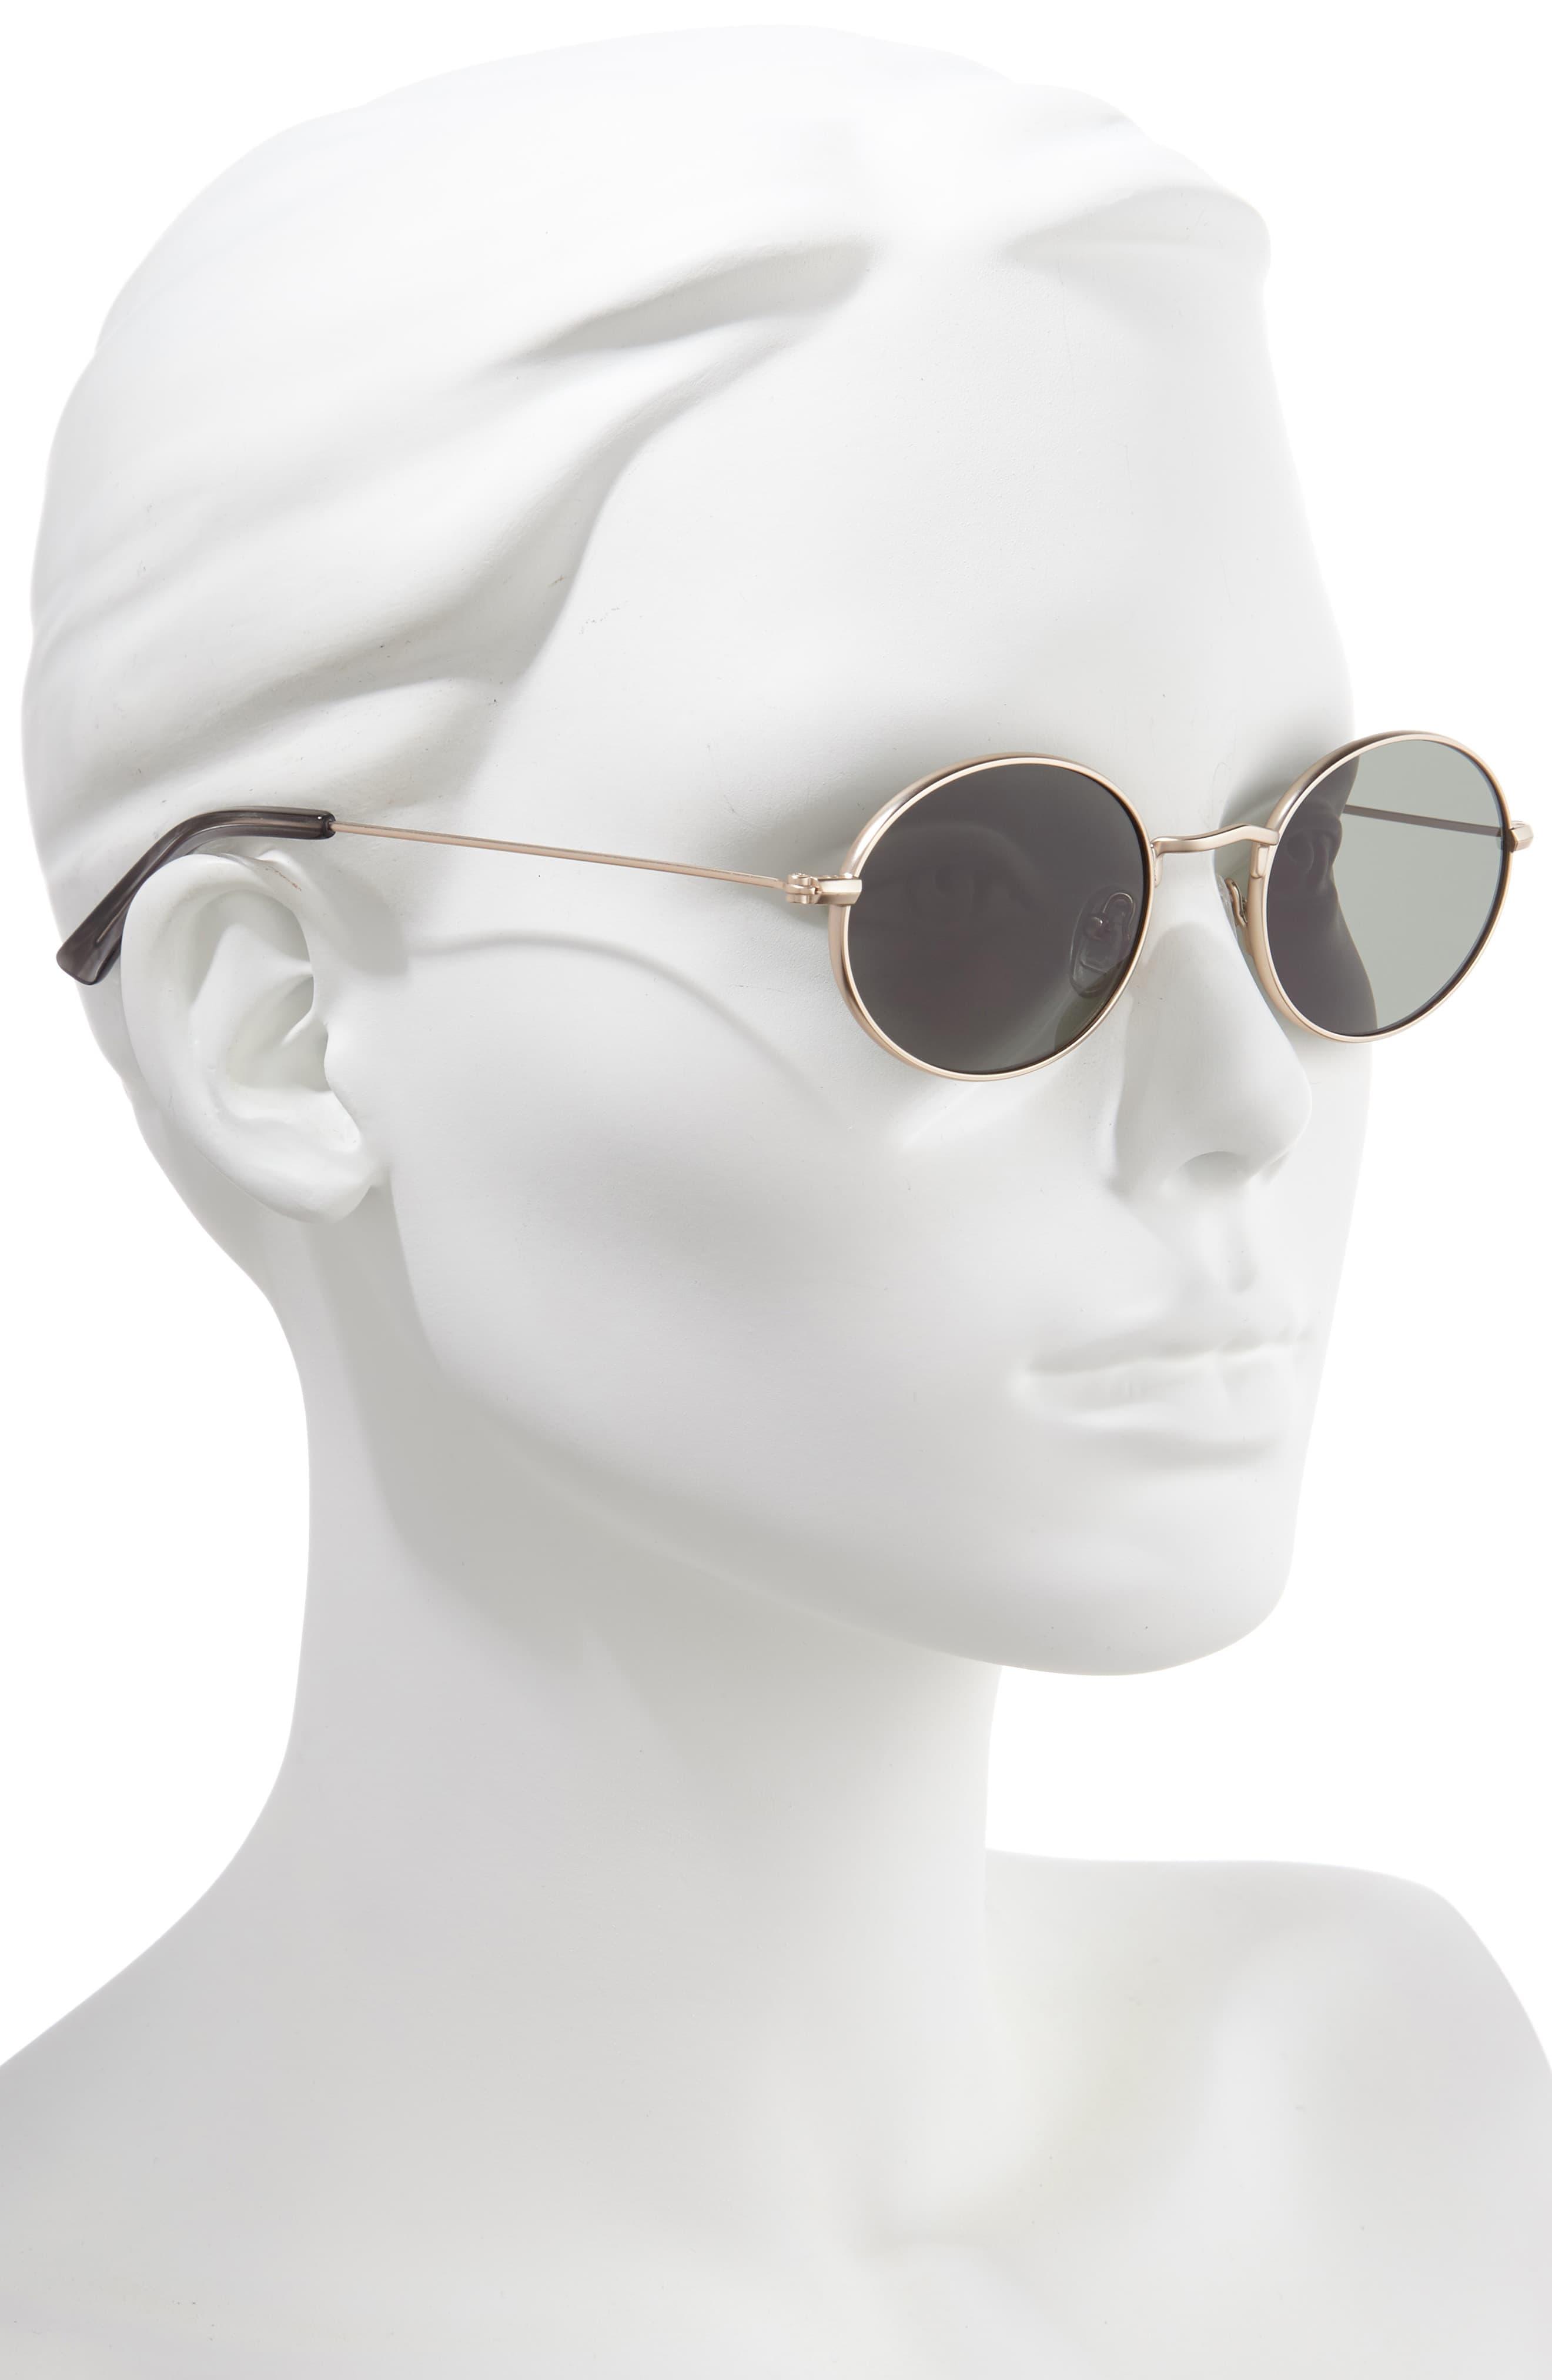 wire rimmed sunglasses